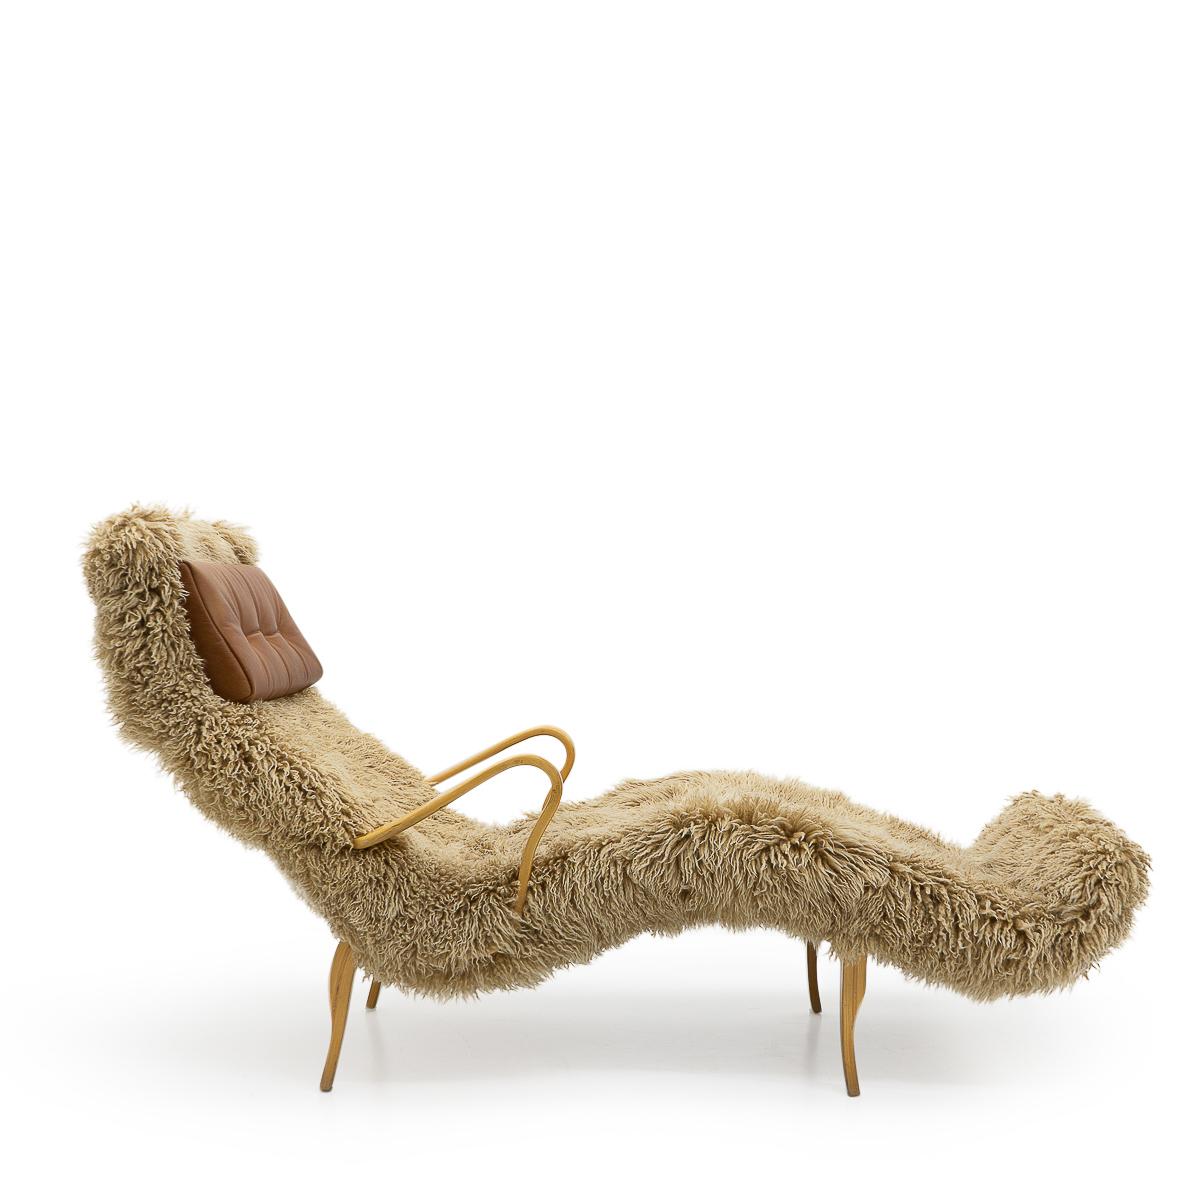 La chaise longue Pernilla 3 a été conçue en 1944 et est considérée comme l'une des œuvres les plus importantes du designer suédois Bruno Mathsson. 

La carrière de Mathsson a débuté en 1931 lorsqu'il a conçu une chaise pour la salle d'attente d'un